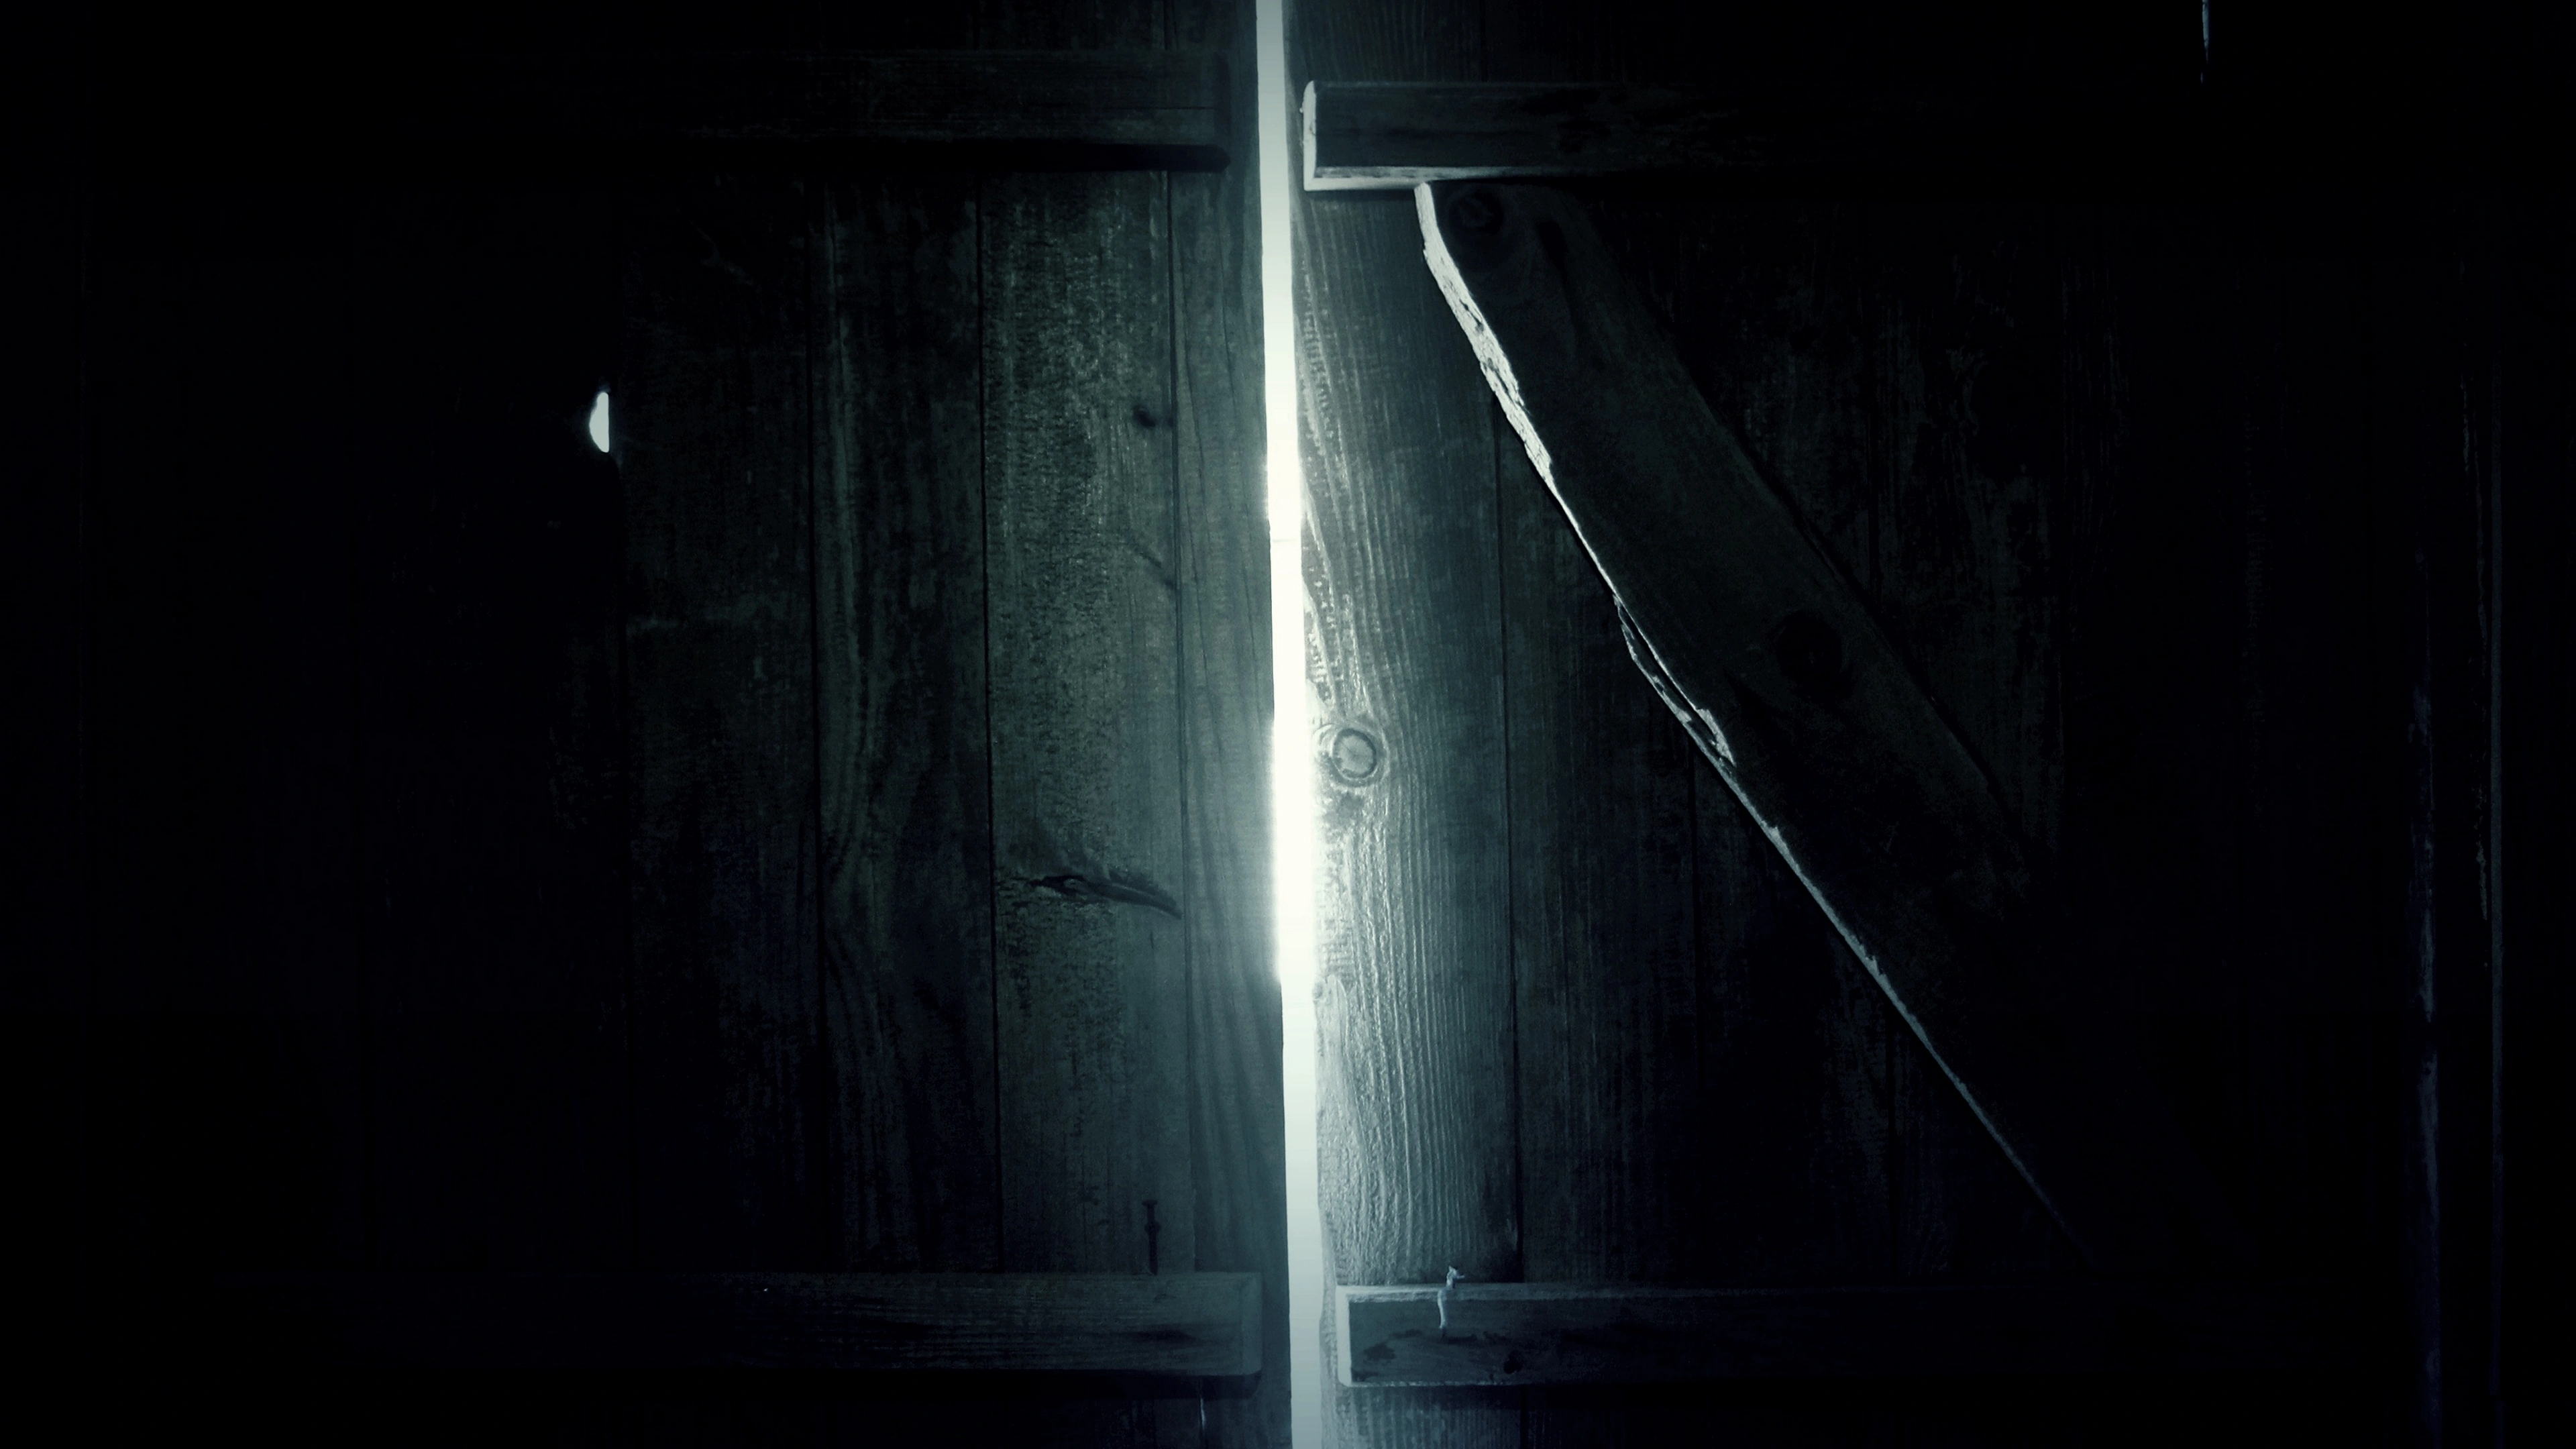 door wooden dark light 4k 1540575541 - door, wooden, dark, light 4k - Wooden, Door, Dark